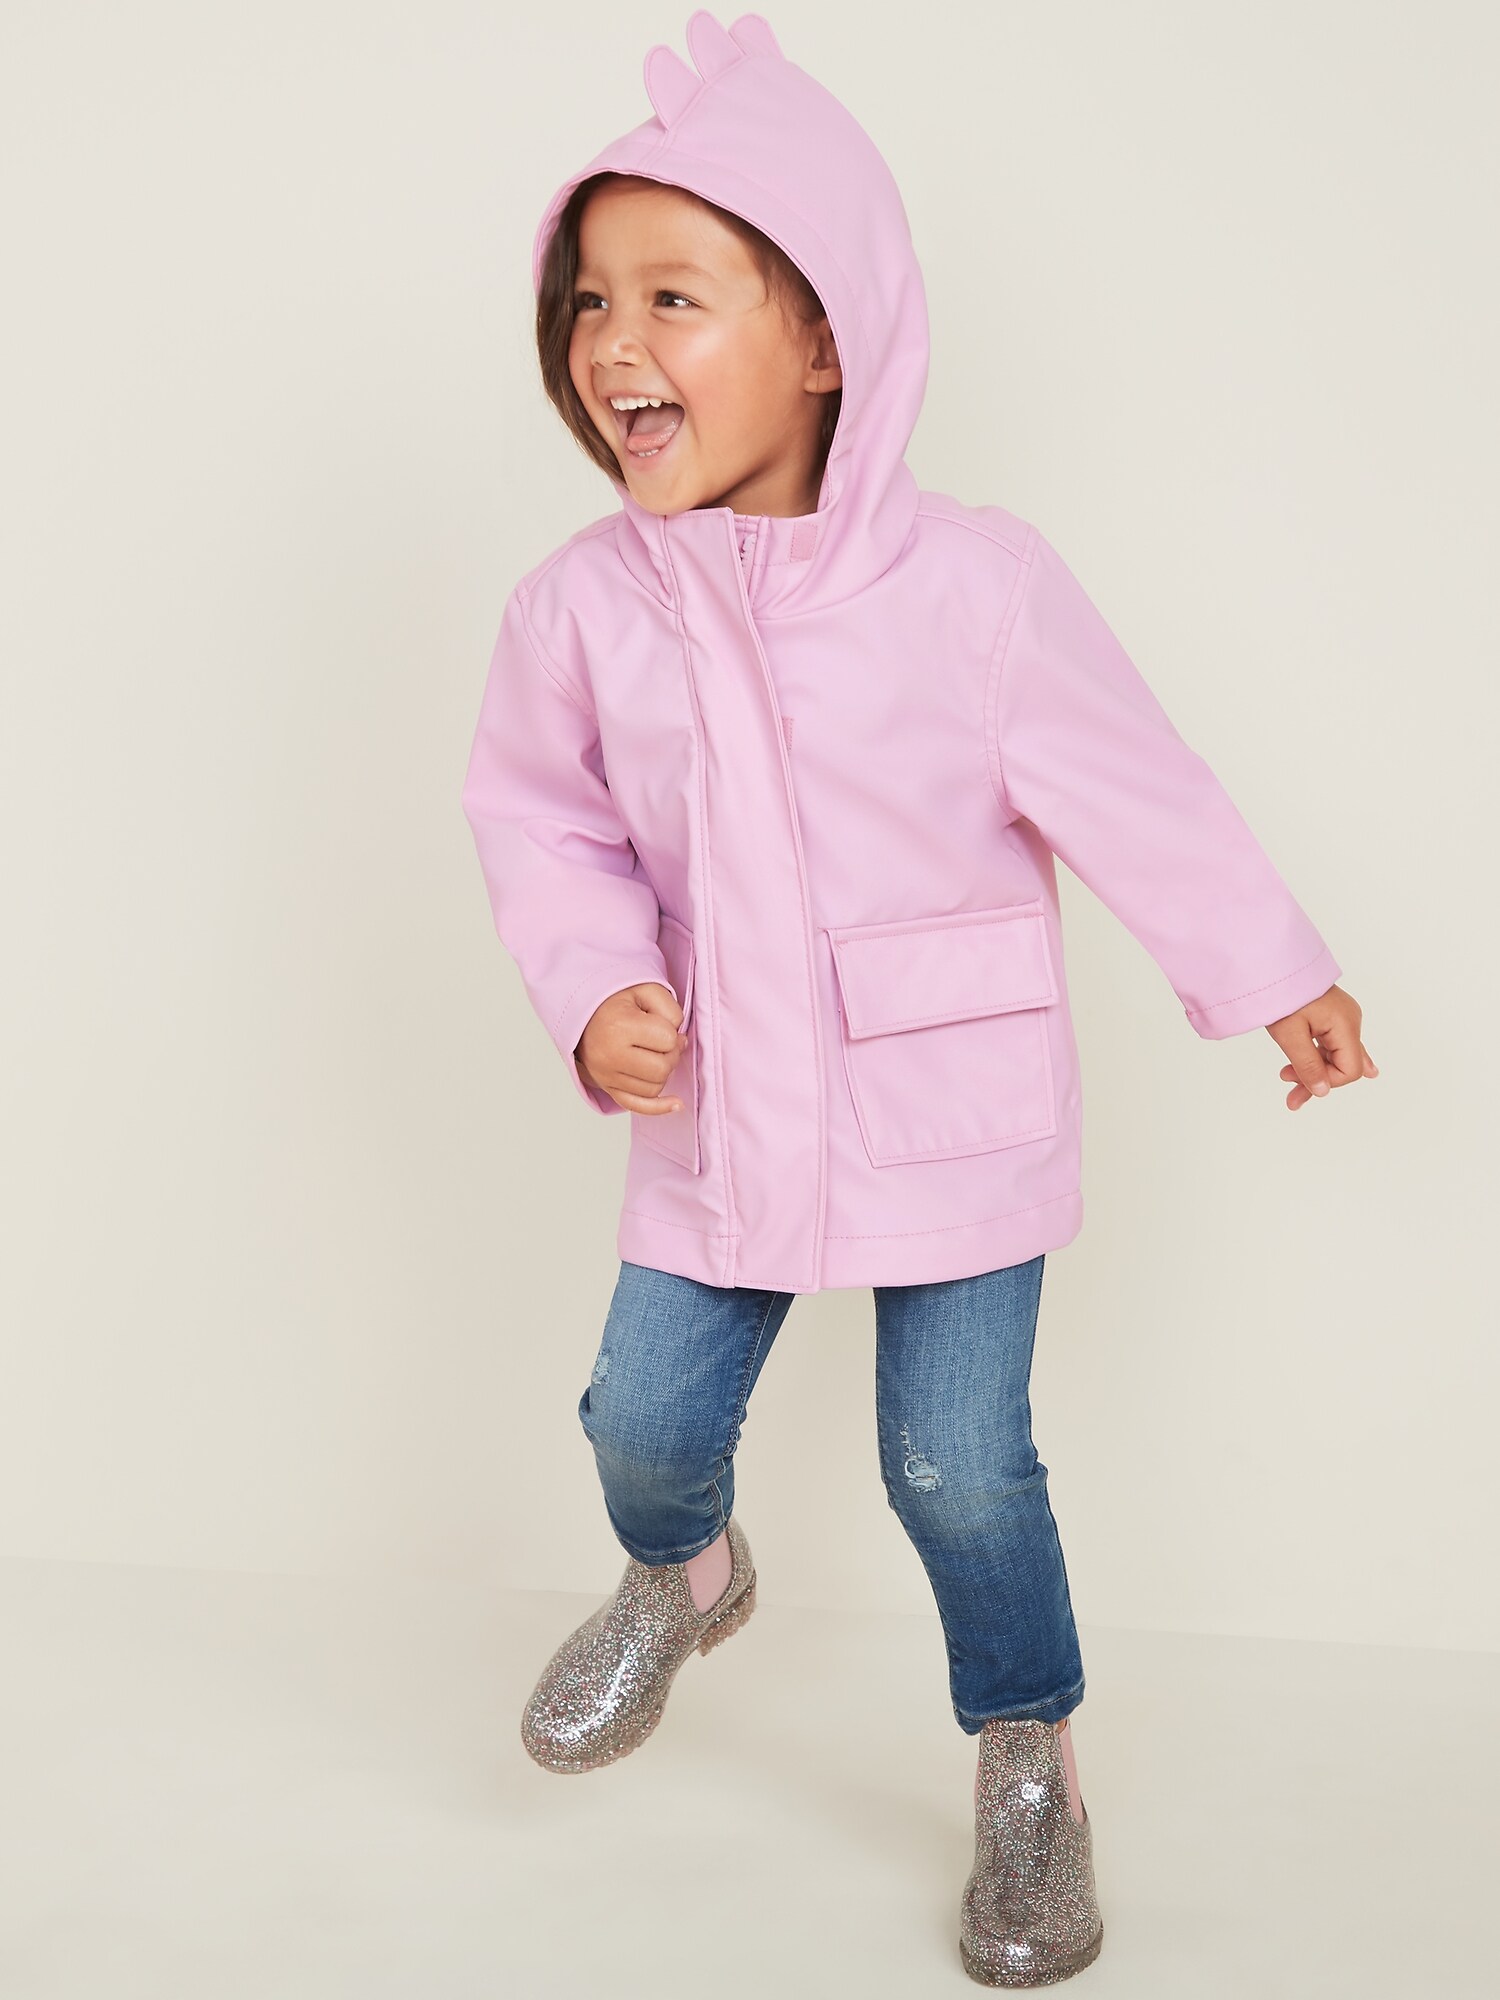 gap rain jacket toddler